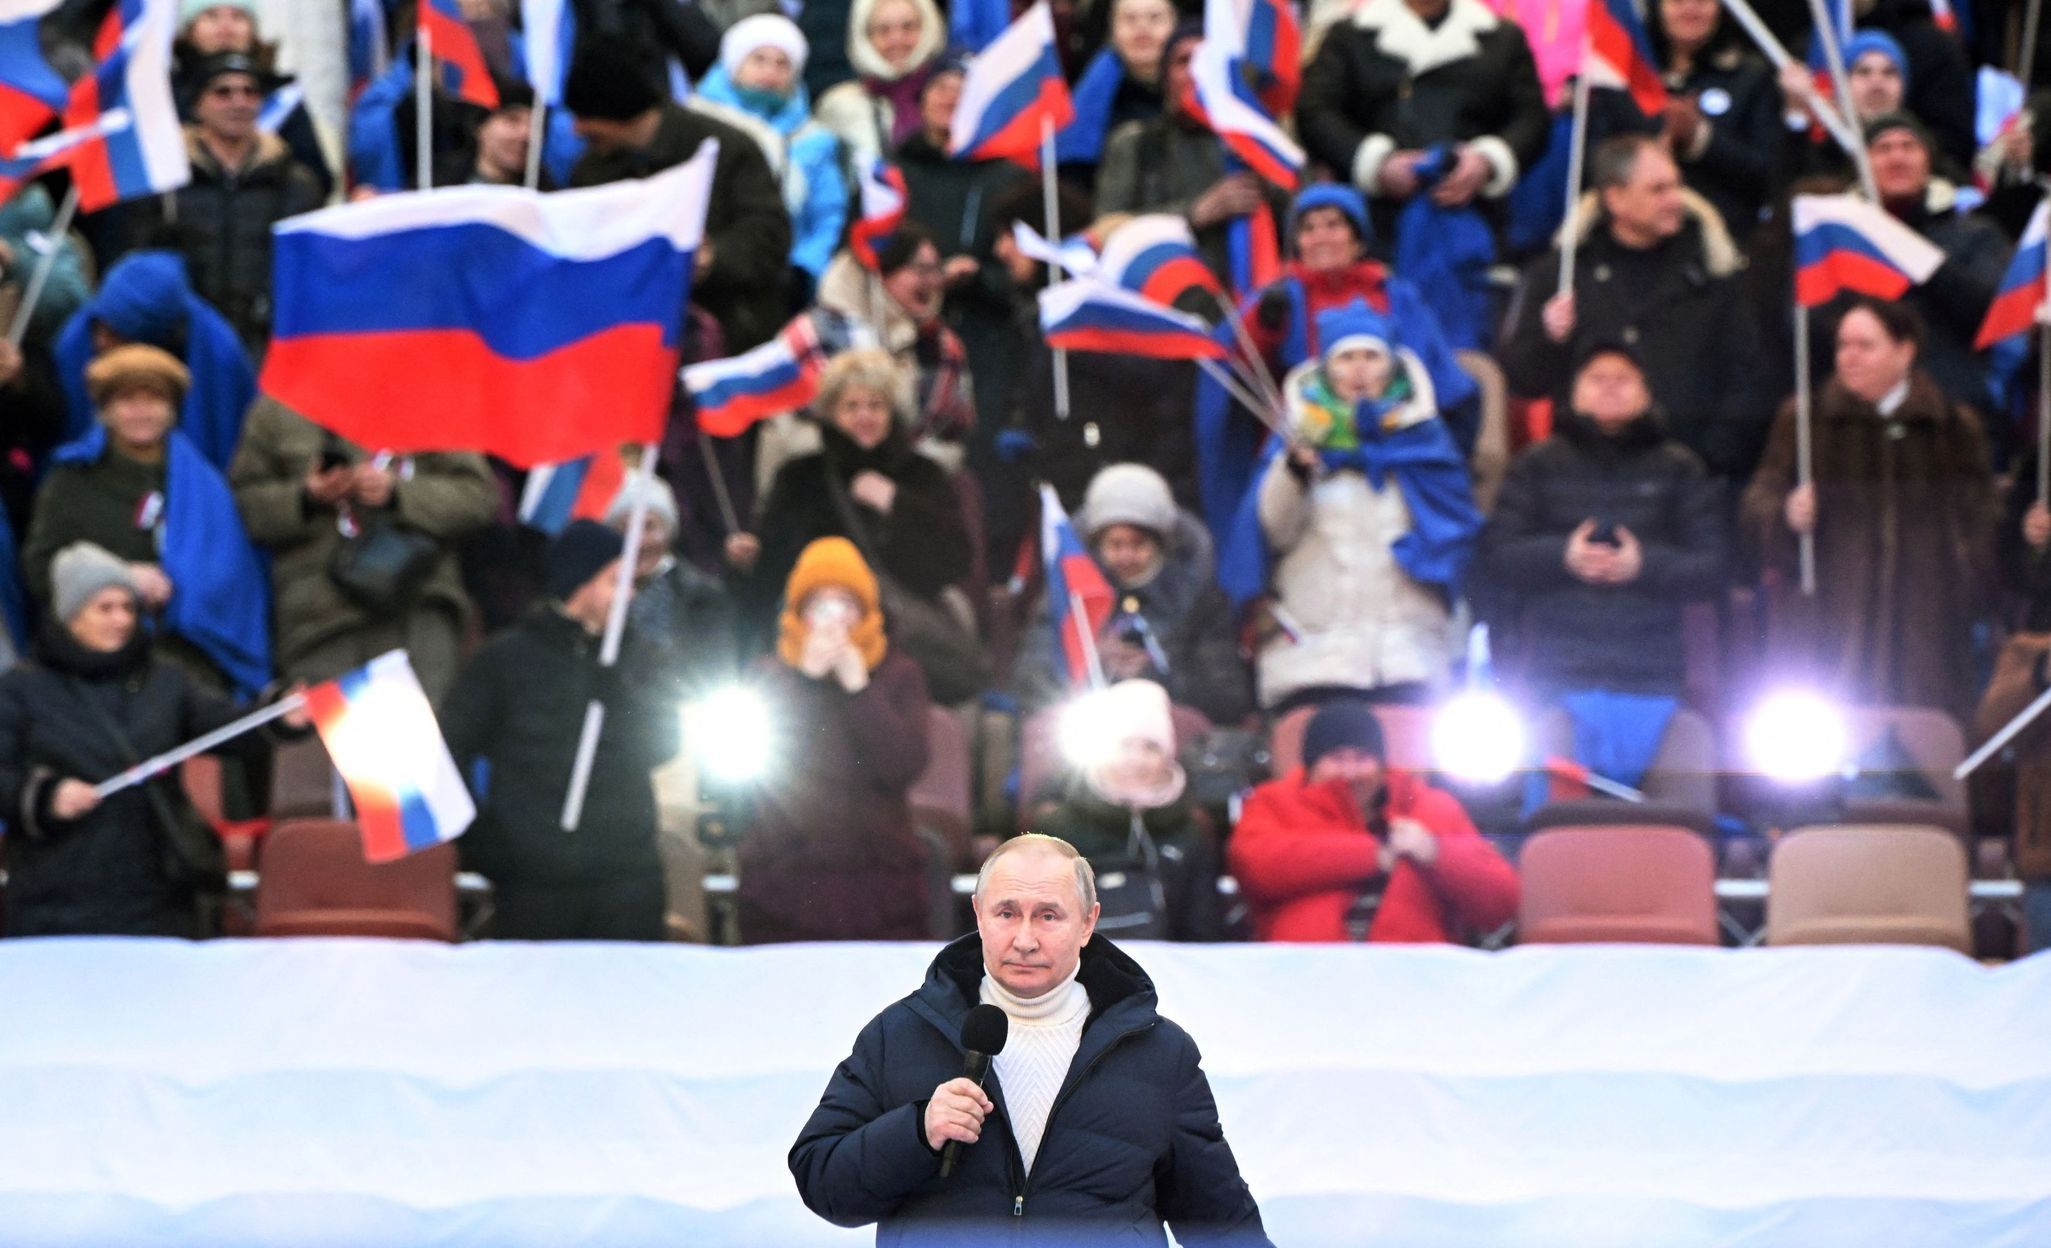 Vladimir Putin, Rusko